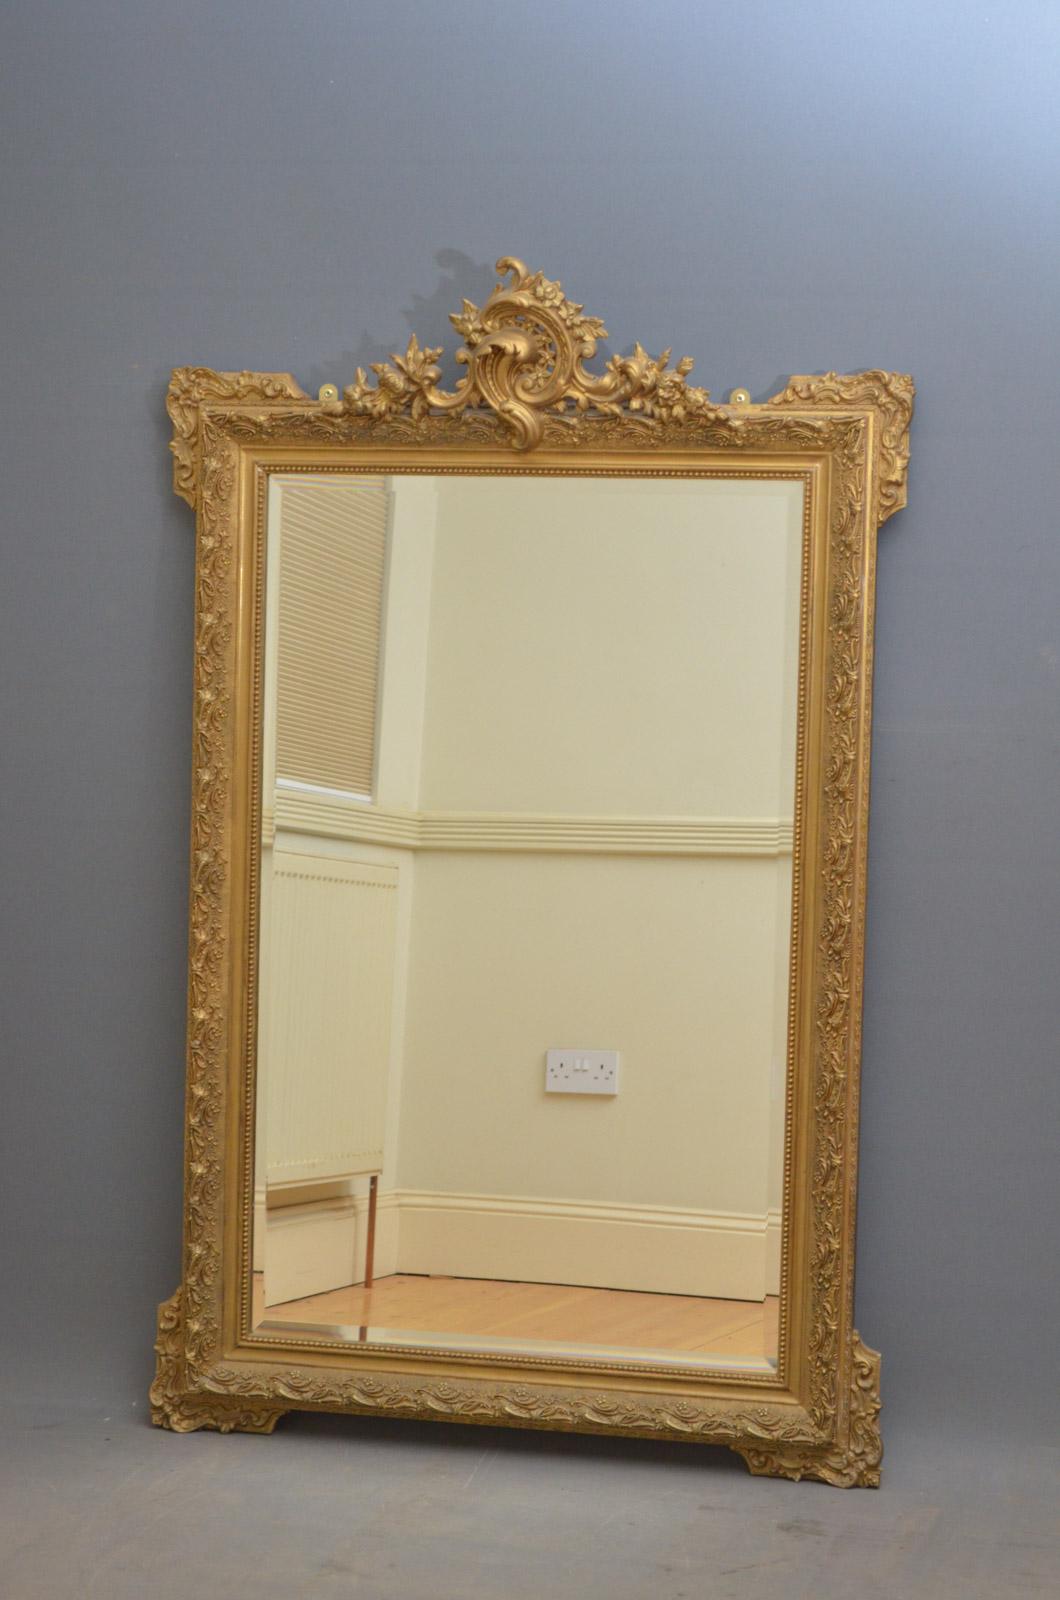 Sn4412 grand miroir mural en bois doré, avec une crête exceptionnelle avec des volutes, des fleurs et des feuilles sur le dessus, et une plaque de miroir biseautée d'origine dans un cadre finement sculpté. Ce miroir a été rénové dans le passé et est